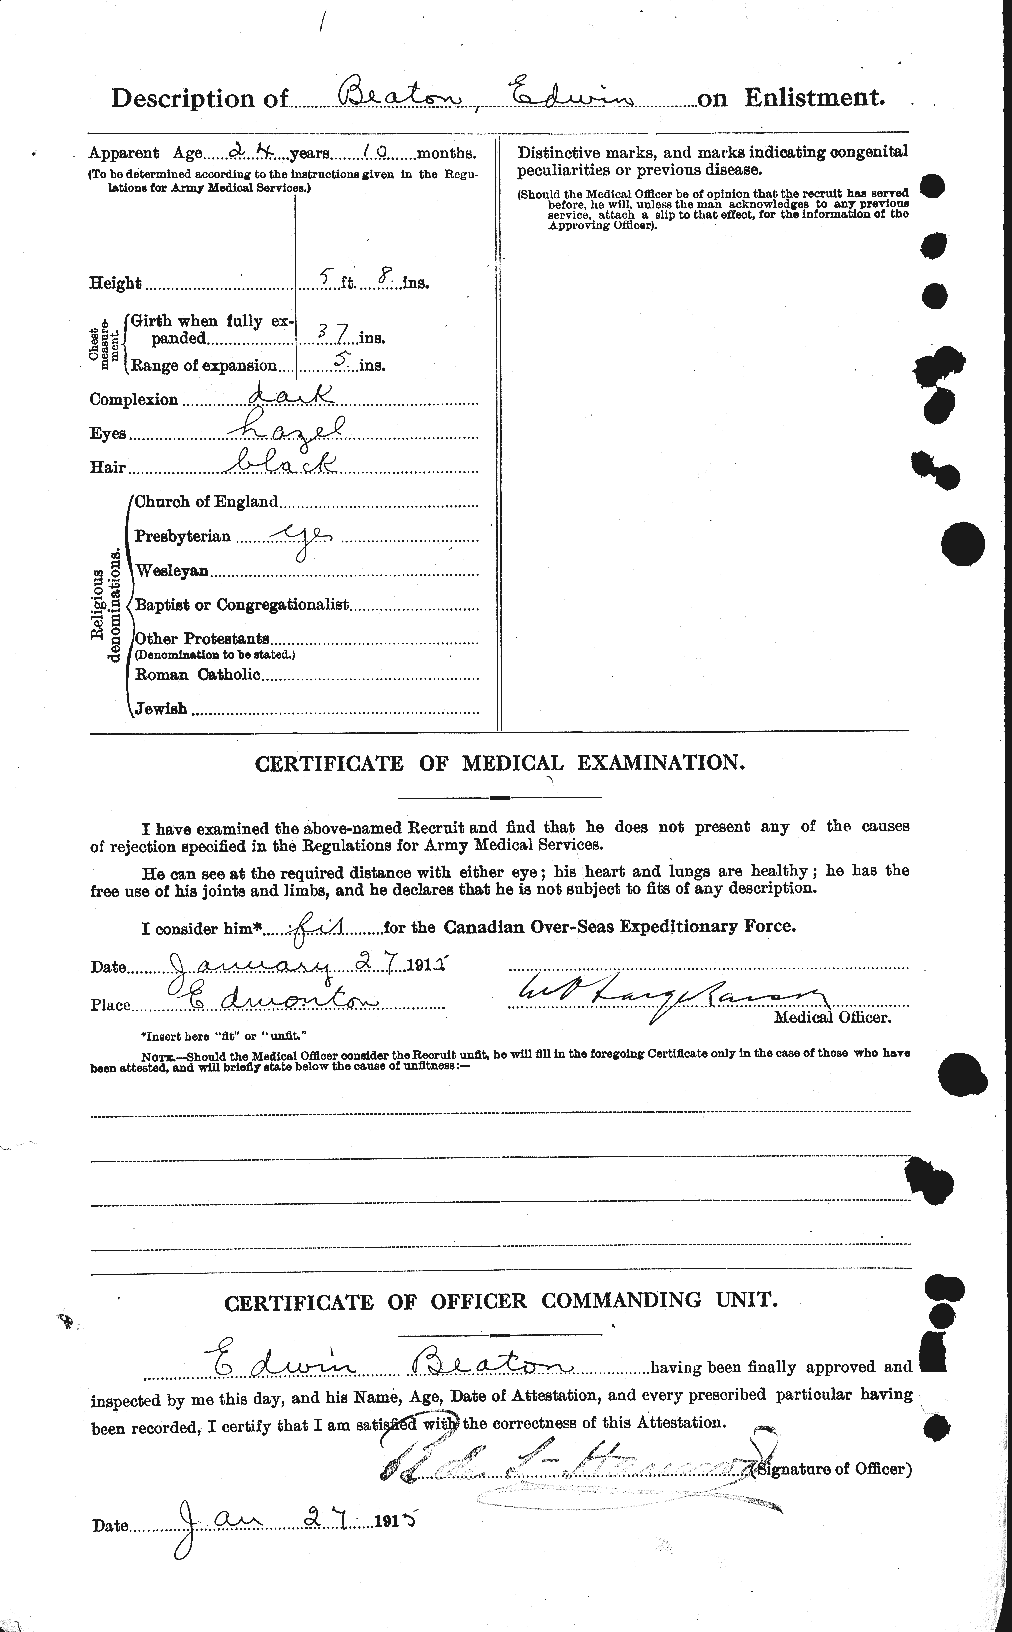 Dossiers du Personnel de la Première Guerre mondiale - CEC 230496b